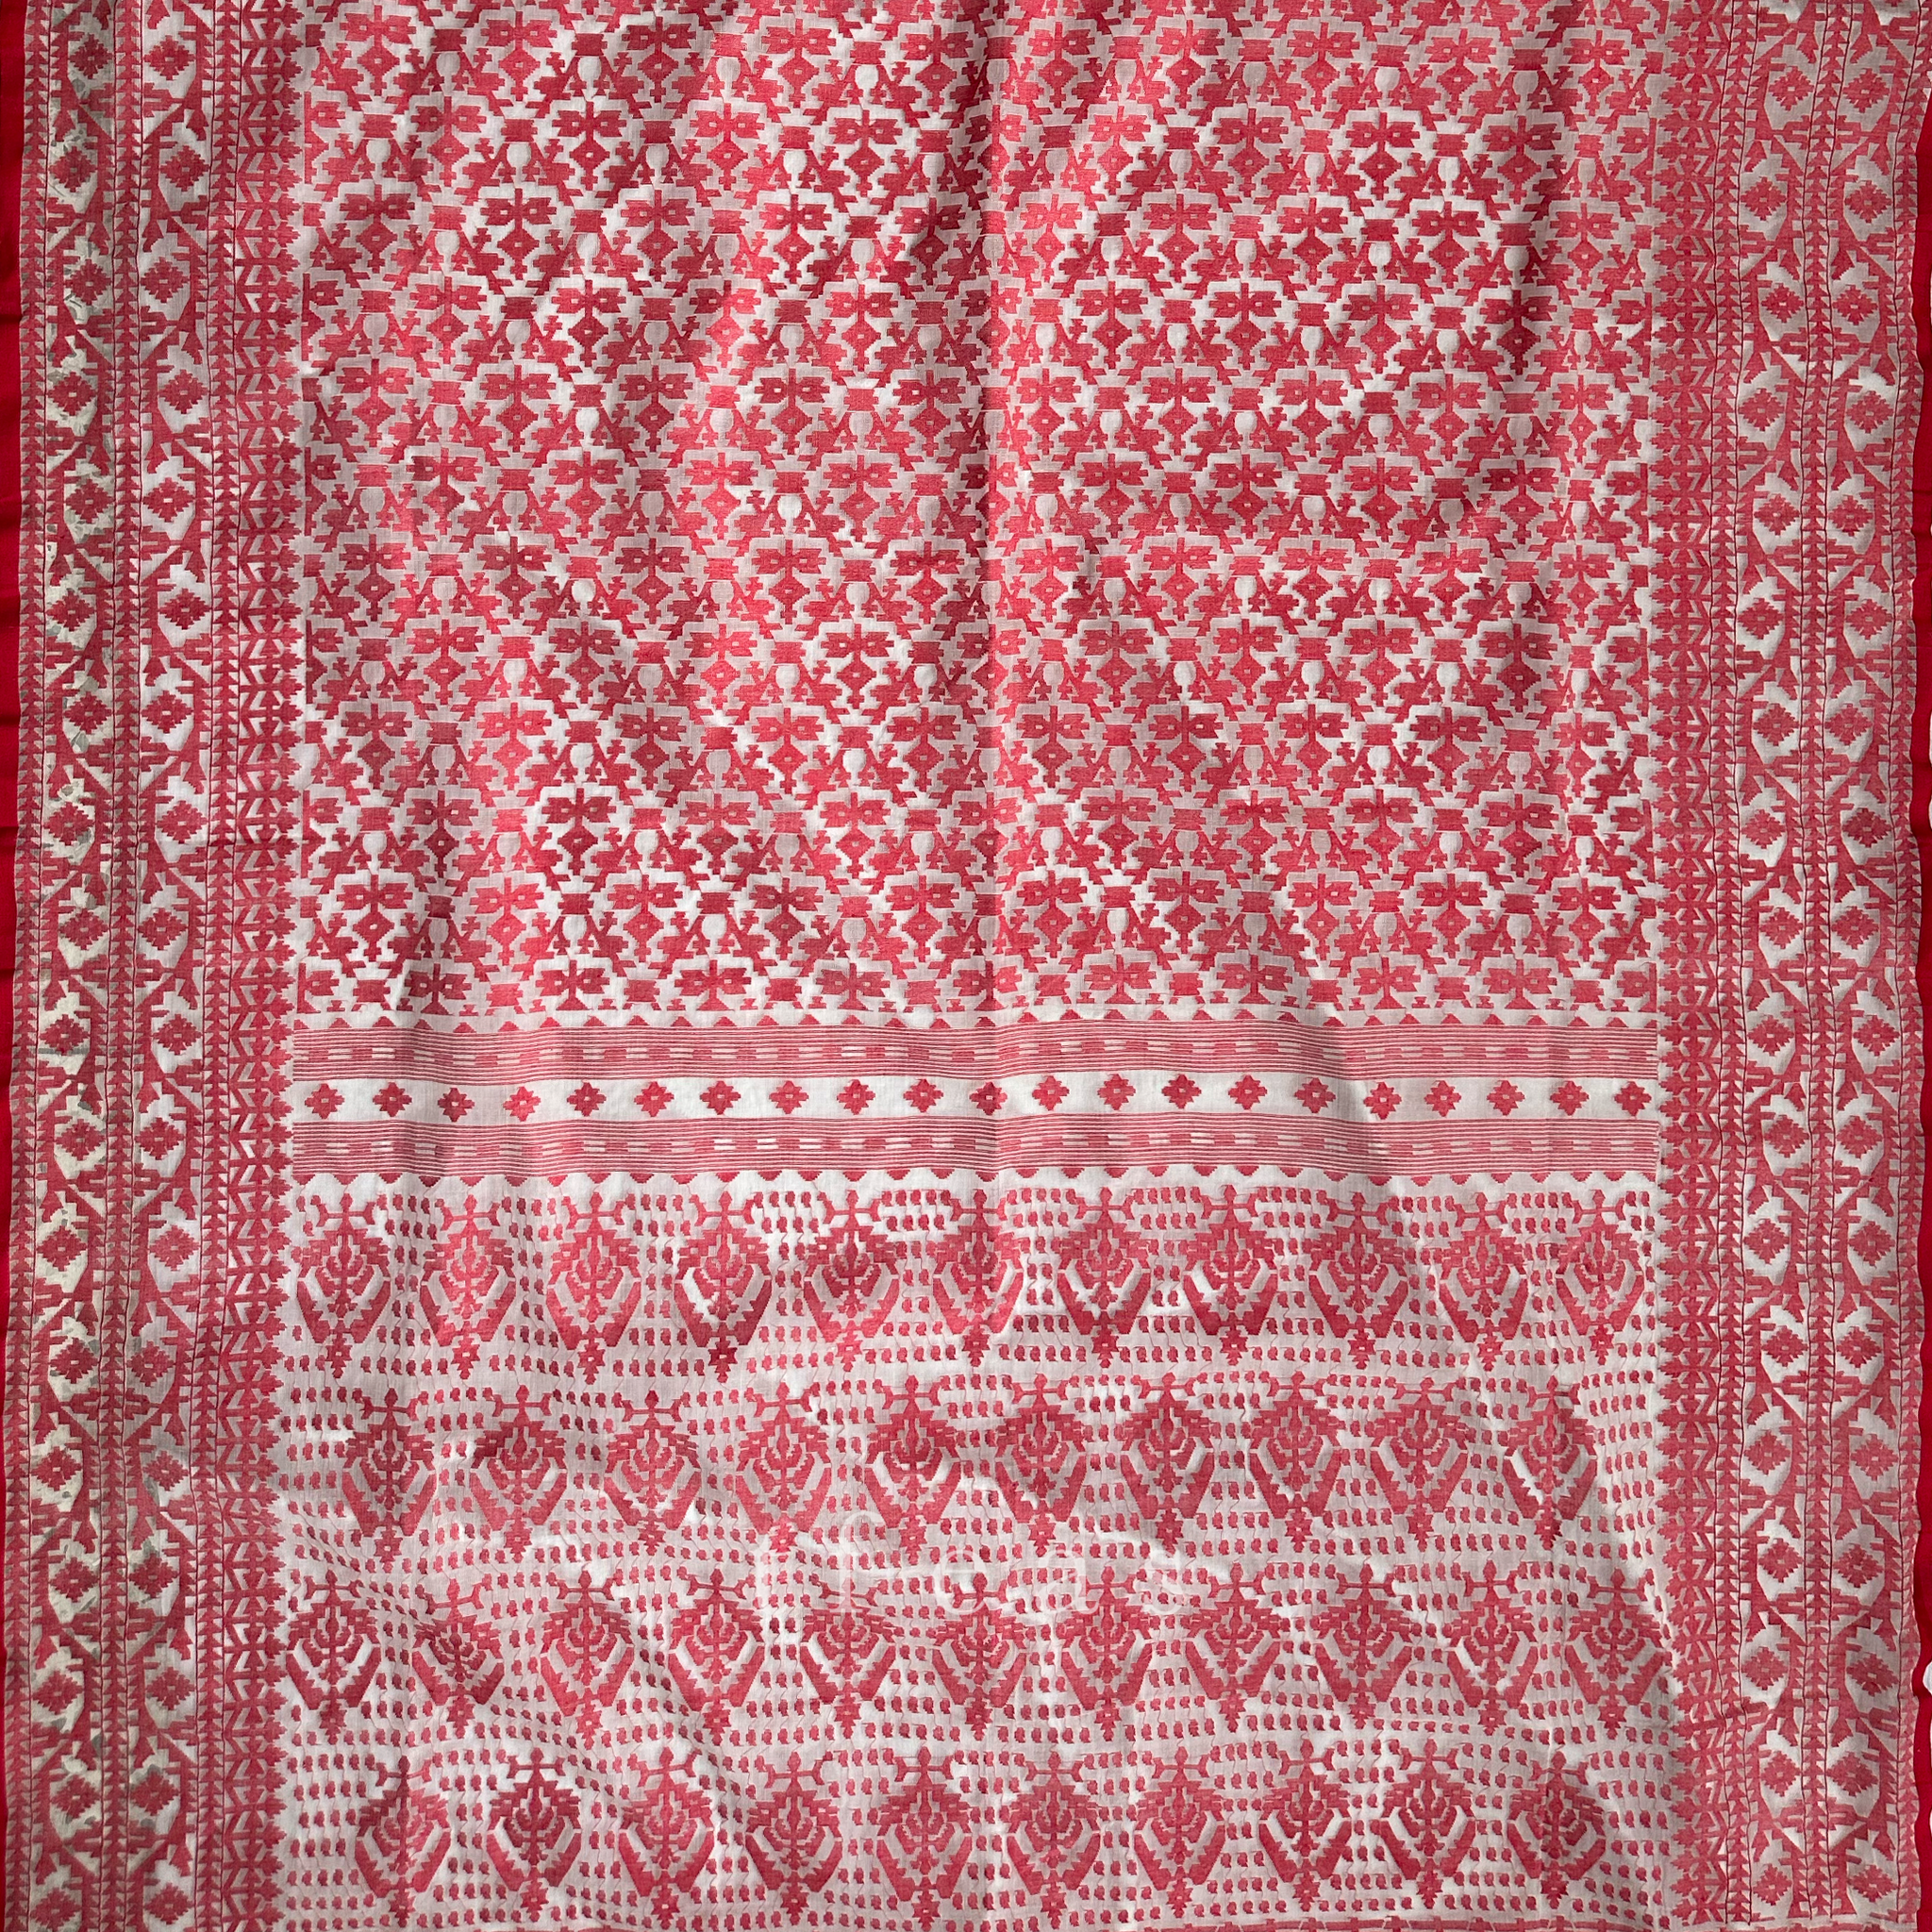 White and Red Grand Dhakai Jamdani Saree